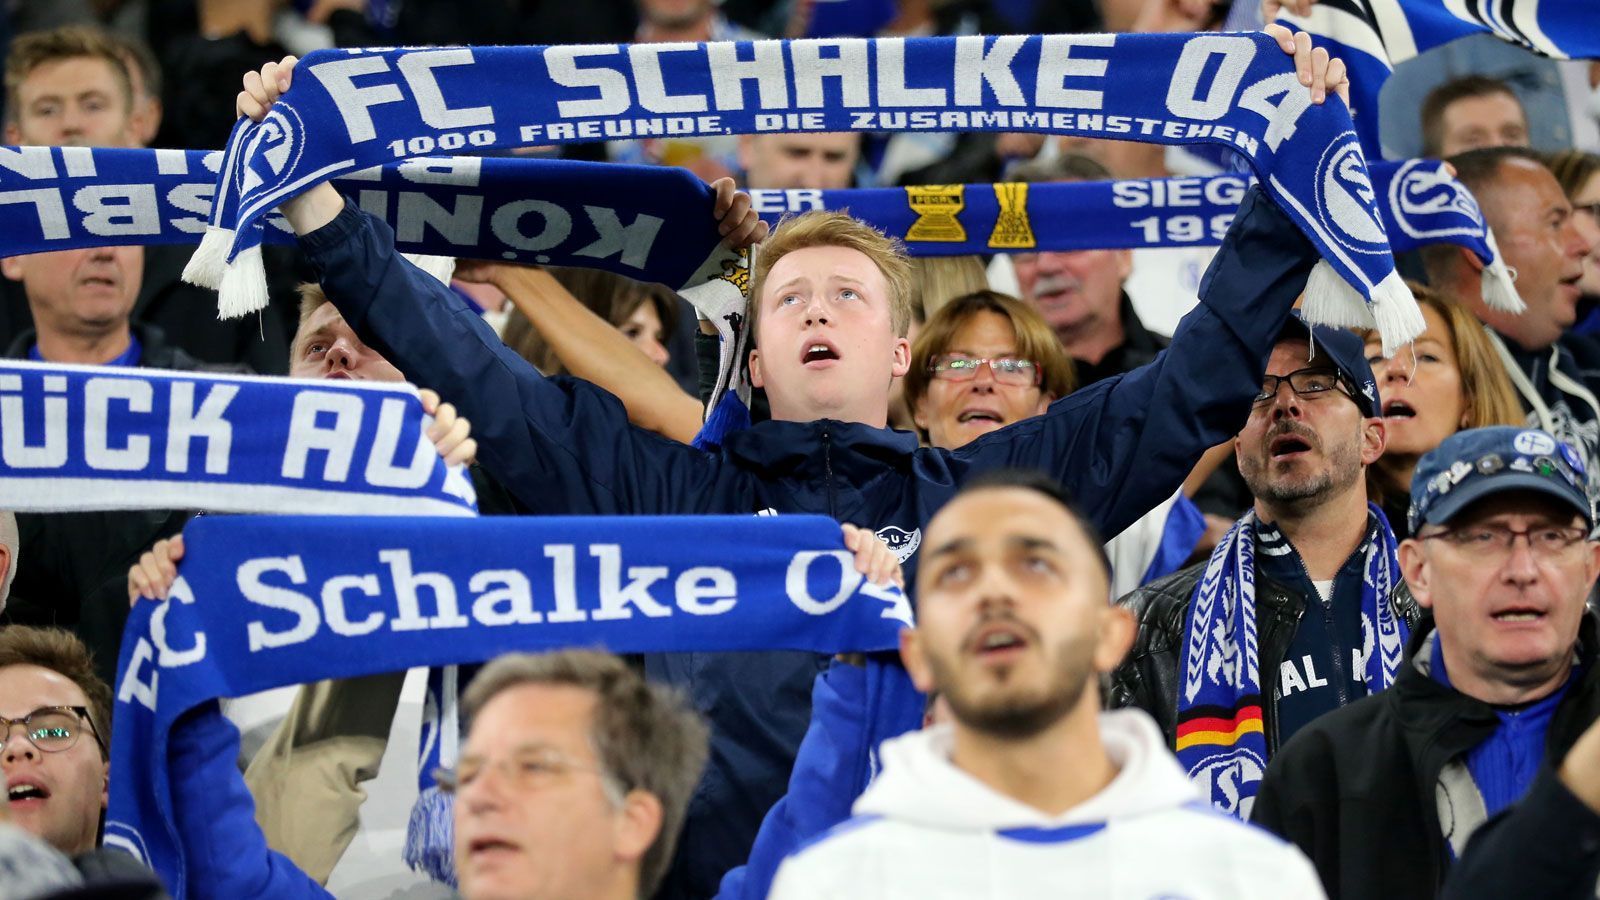 
                <strong>FC Schalke 04 </strong><br>
                Erwachsene (30-60 Jahre): 50 EuroErwachsene (18-29 Jahre): 25 EuroErwachsene (ab 61 Jahre): 35 EuroKinder und Jugendliche (7-17 Jahre): 12 EuroKinder (0-6 Jahre): 3 Euro
              